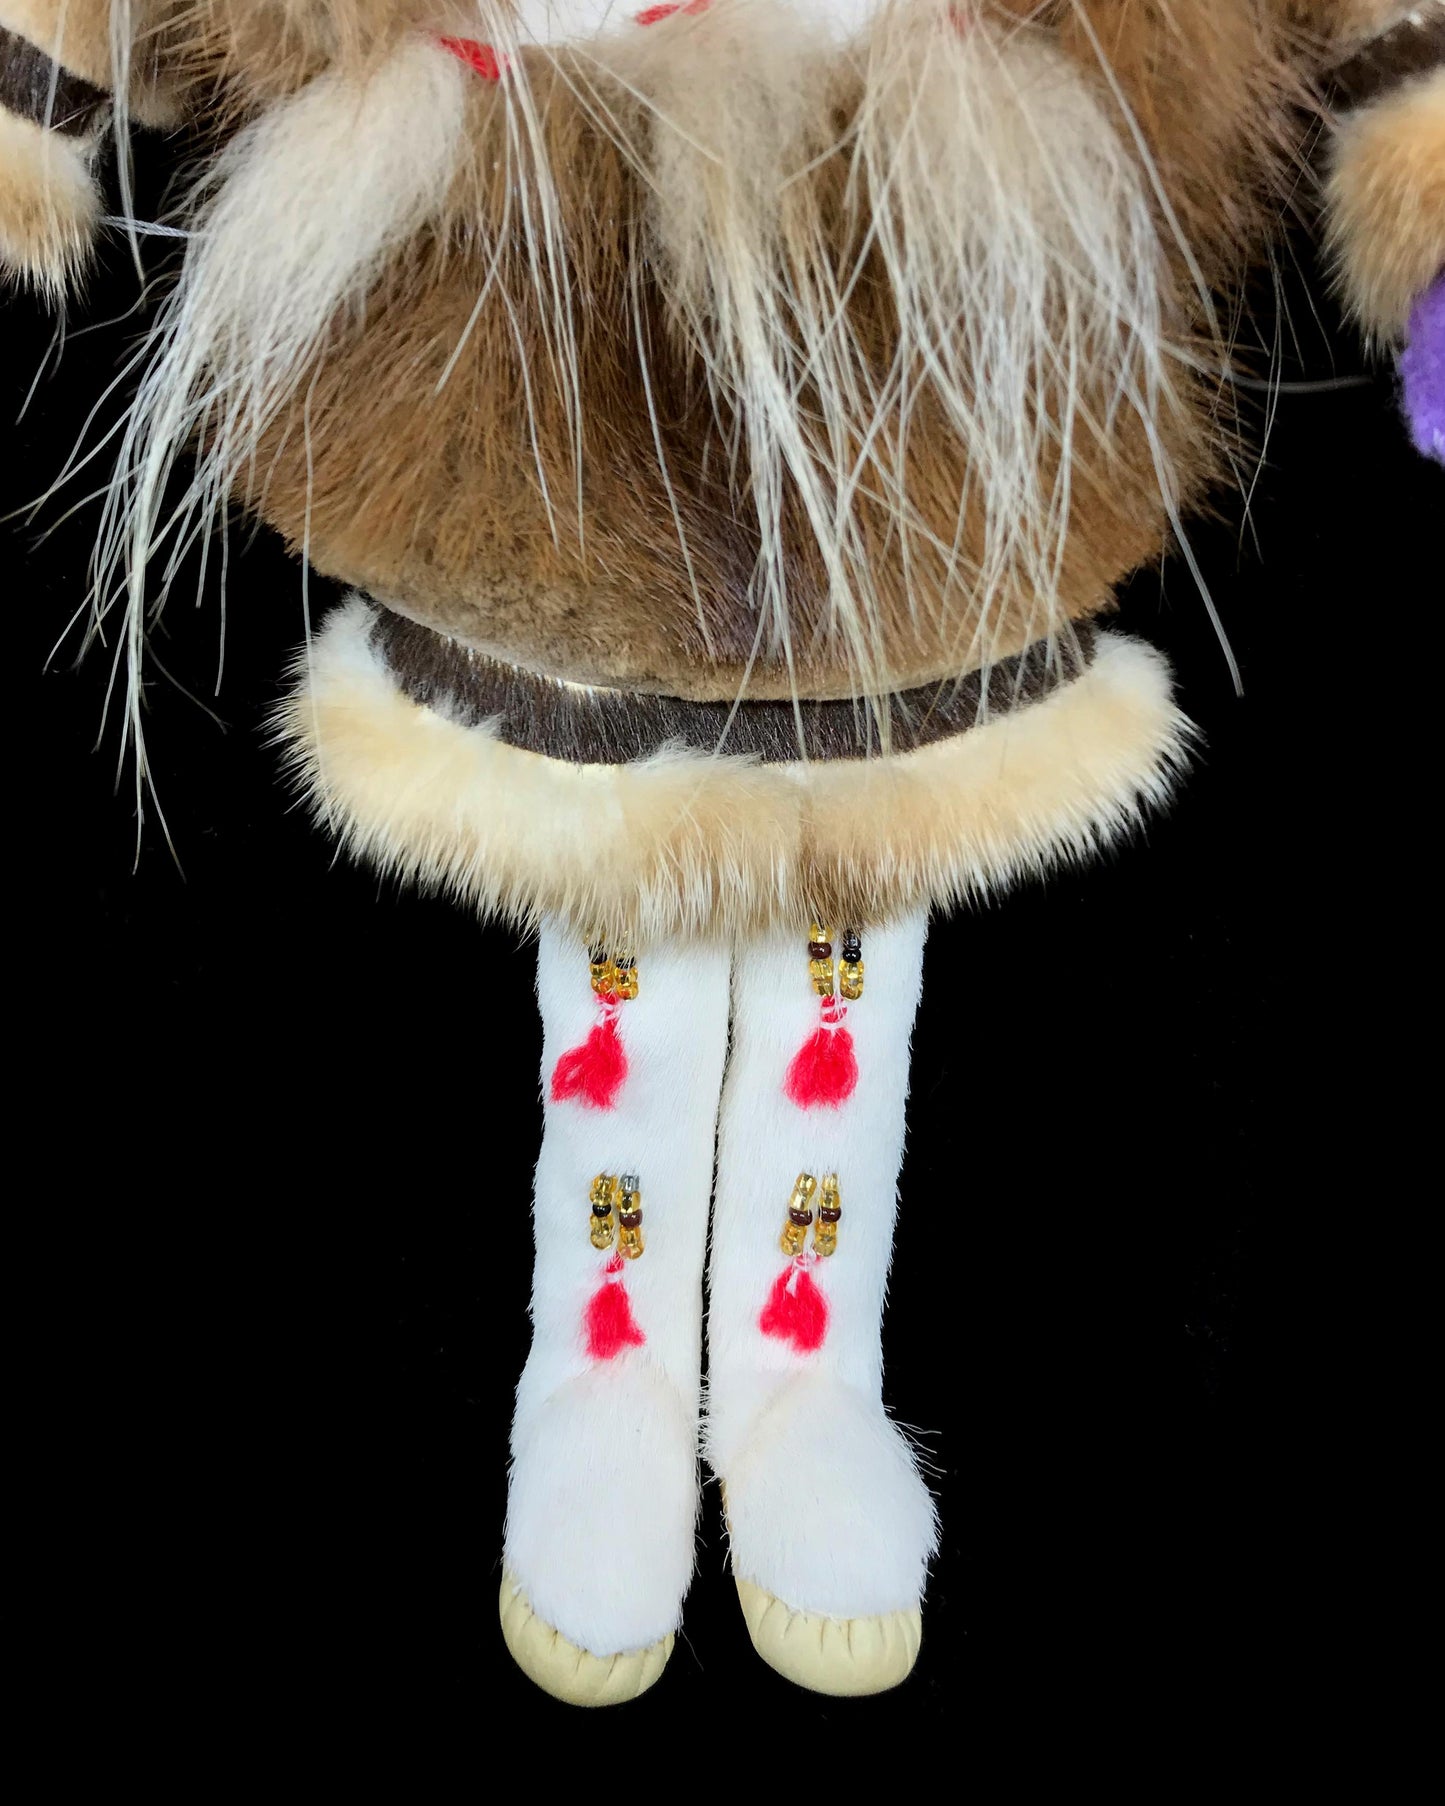 Doll- Inupiaq Female w/ Fur & Beadwork, 10"